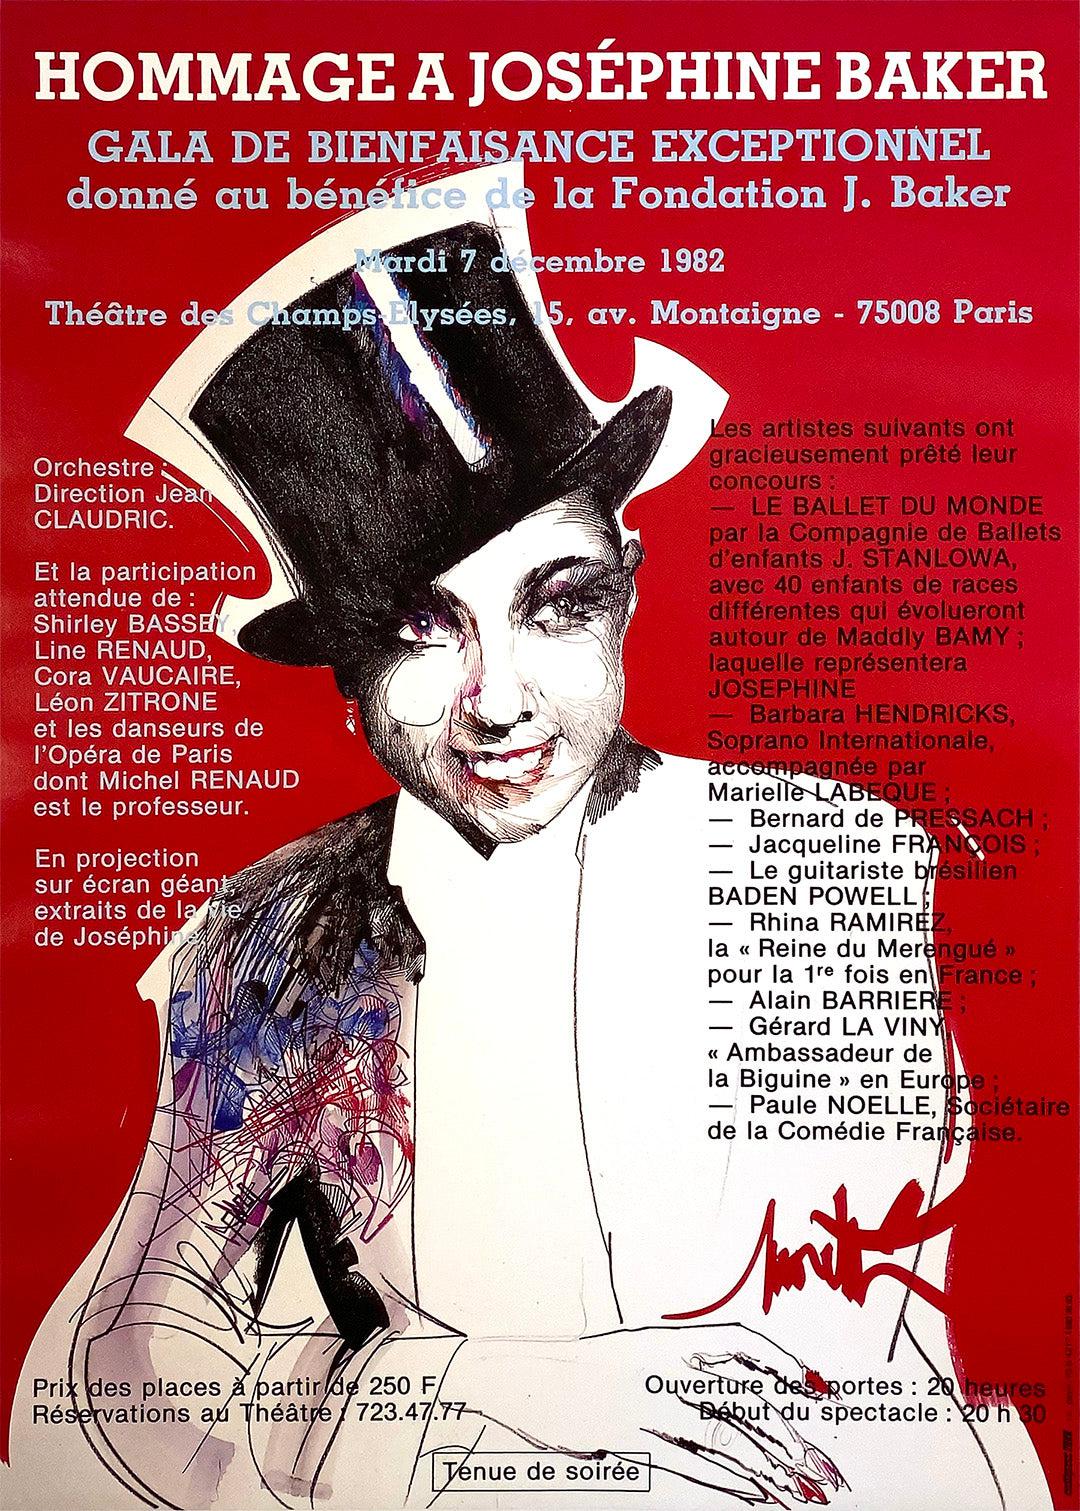 Original Vintage Hommage a Josephine Baker Poster 1982